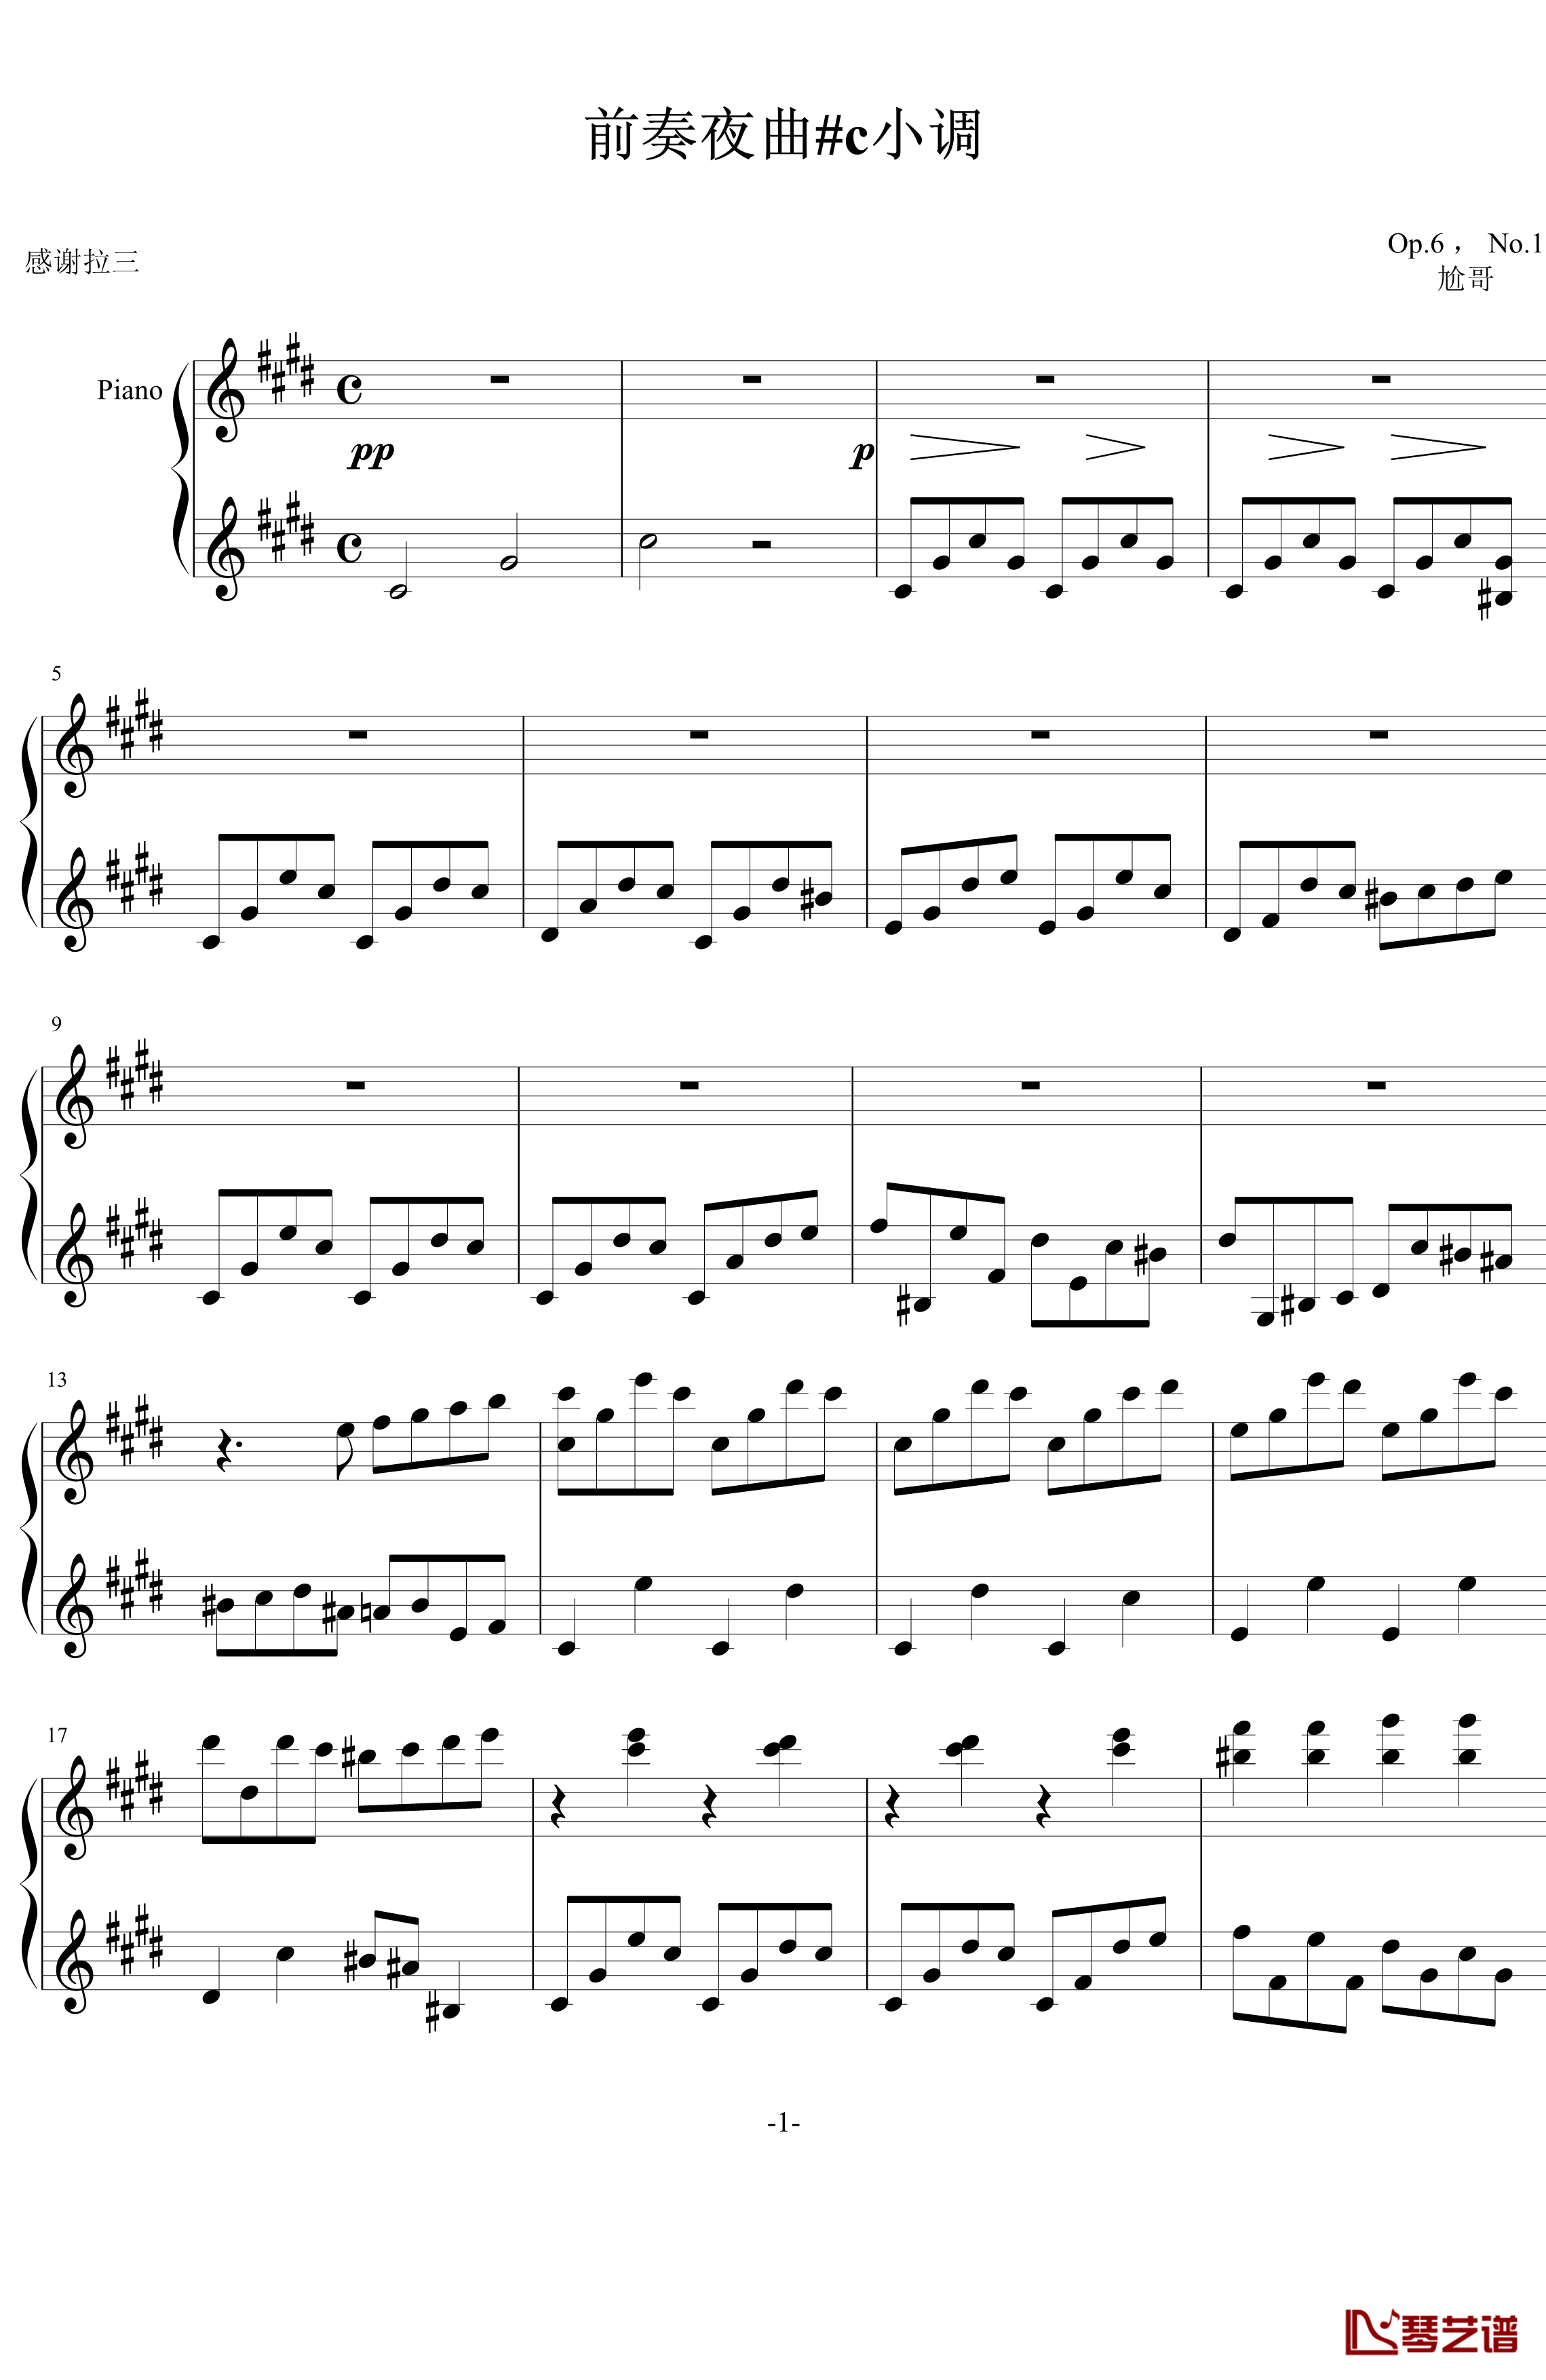 夜曲钢琴谱-尬哥1